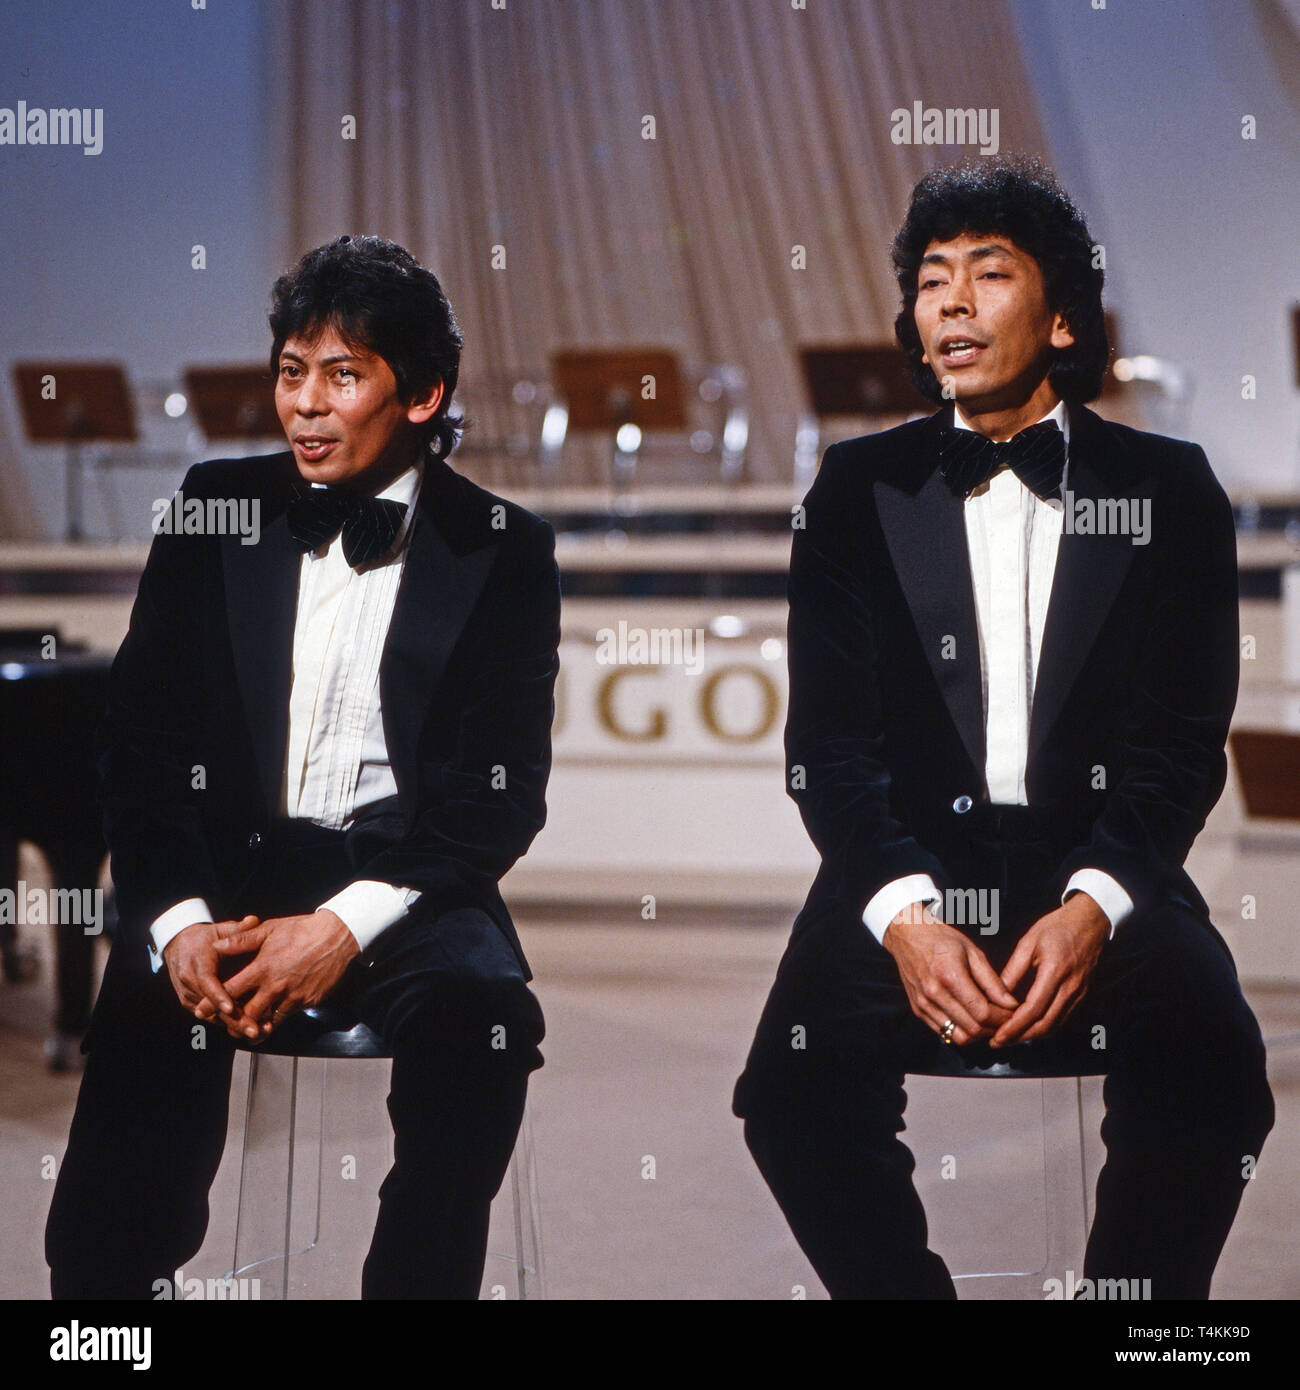 Blue Diamonds, niederländisches Doo Wop Duo, bei einem Auftritt im deutschen Fernsehen, Deutschland 1982. Dutch Doo Wop duo "Blue Diamonds" performing on German TV, Germany 1982. Stock Photo